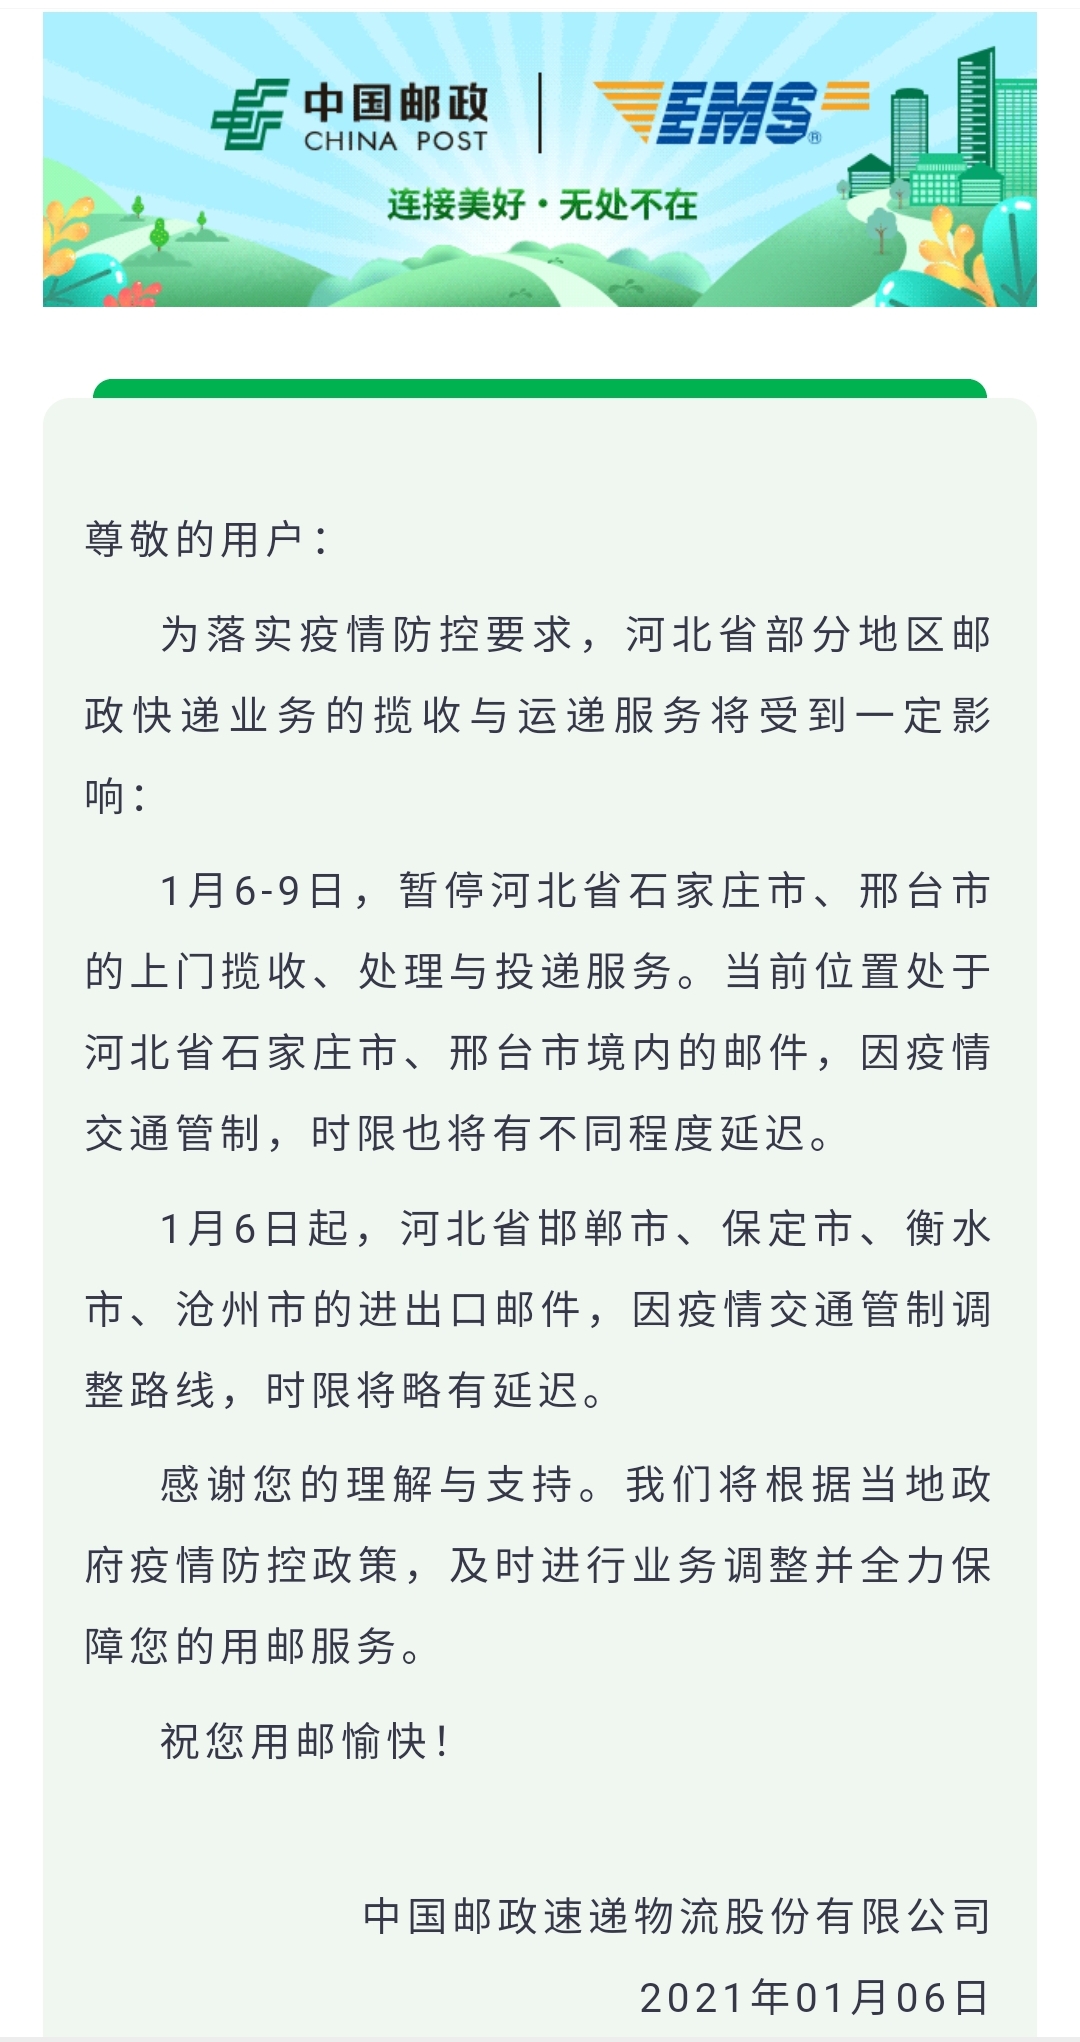 公告称:为落实疫情防控要求,河北省部分地区邮政快递业务的揽收与运递